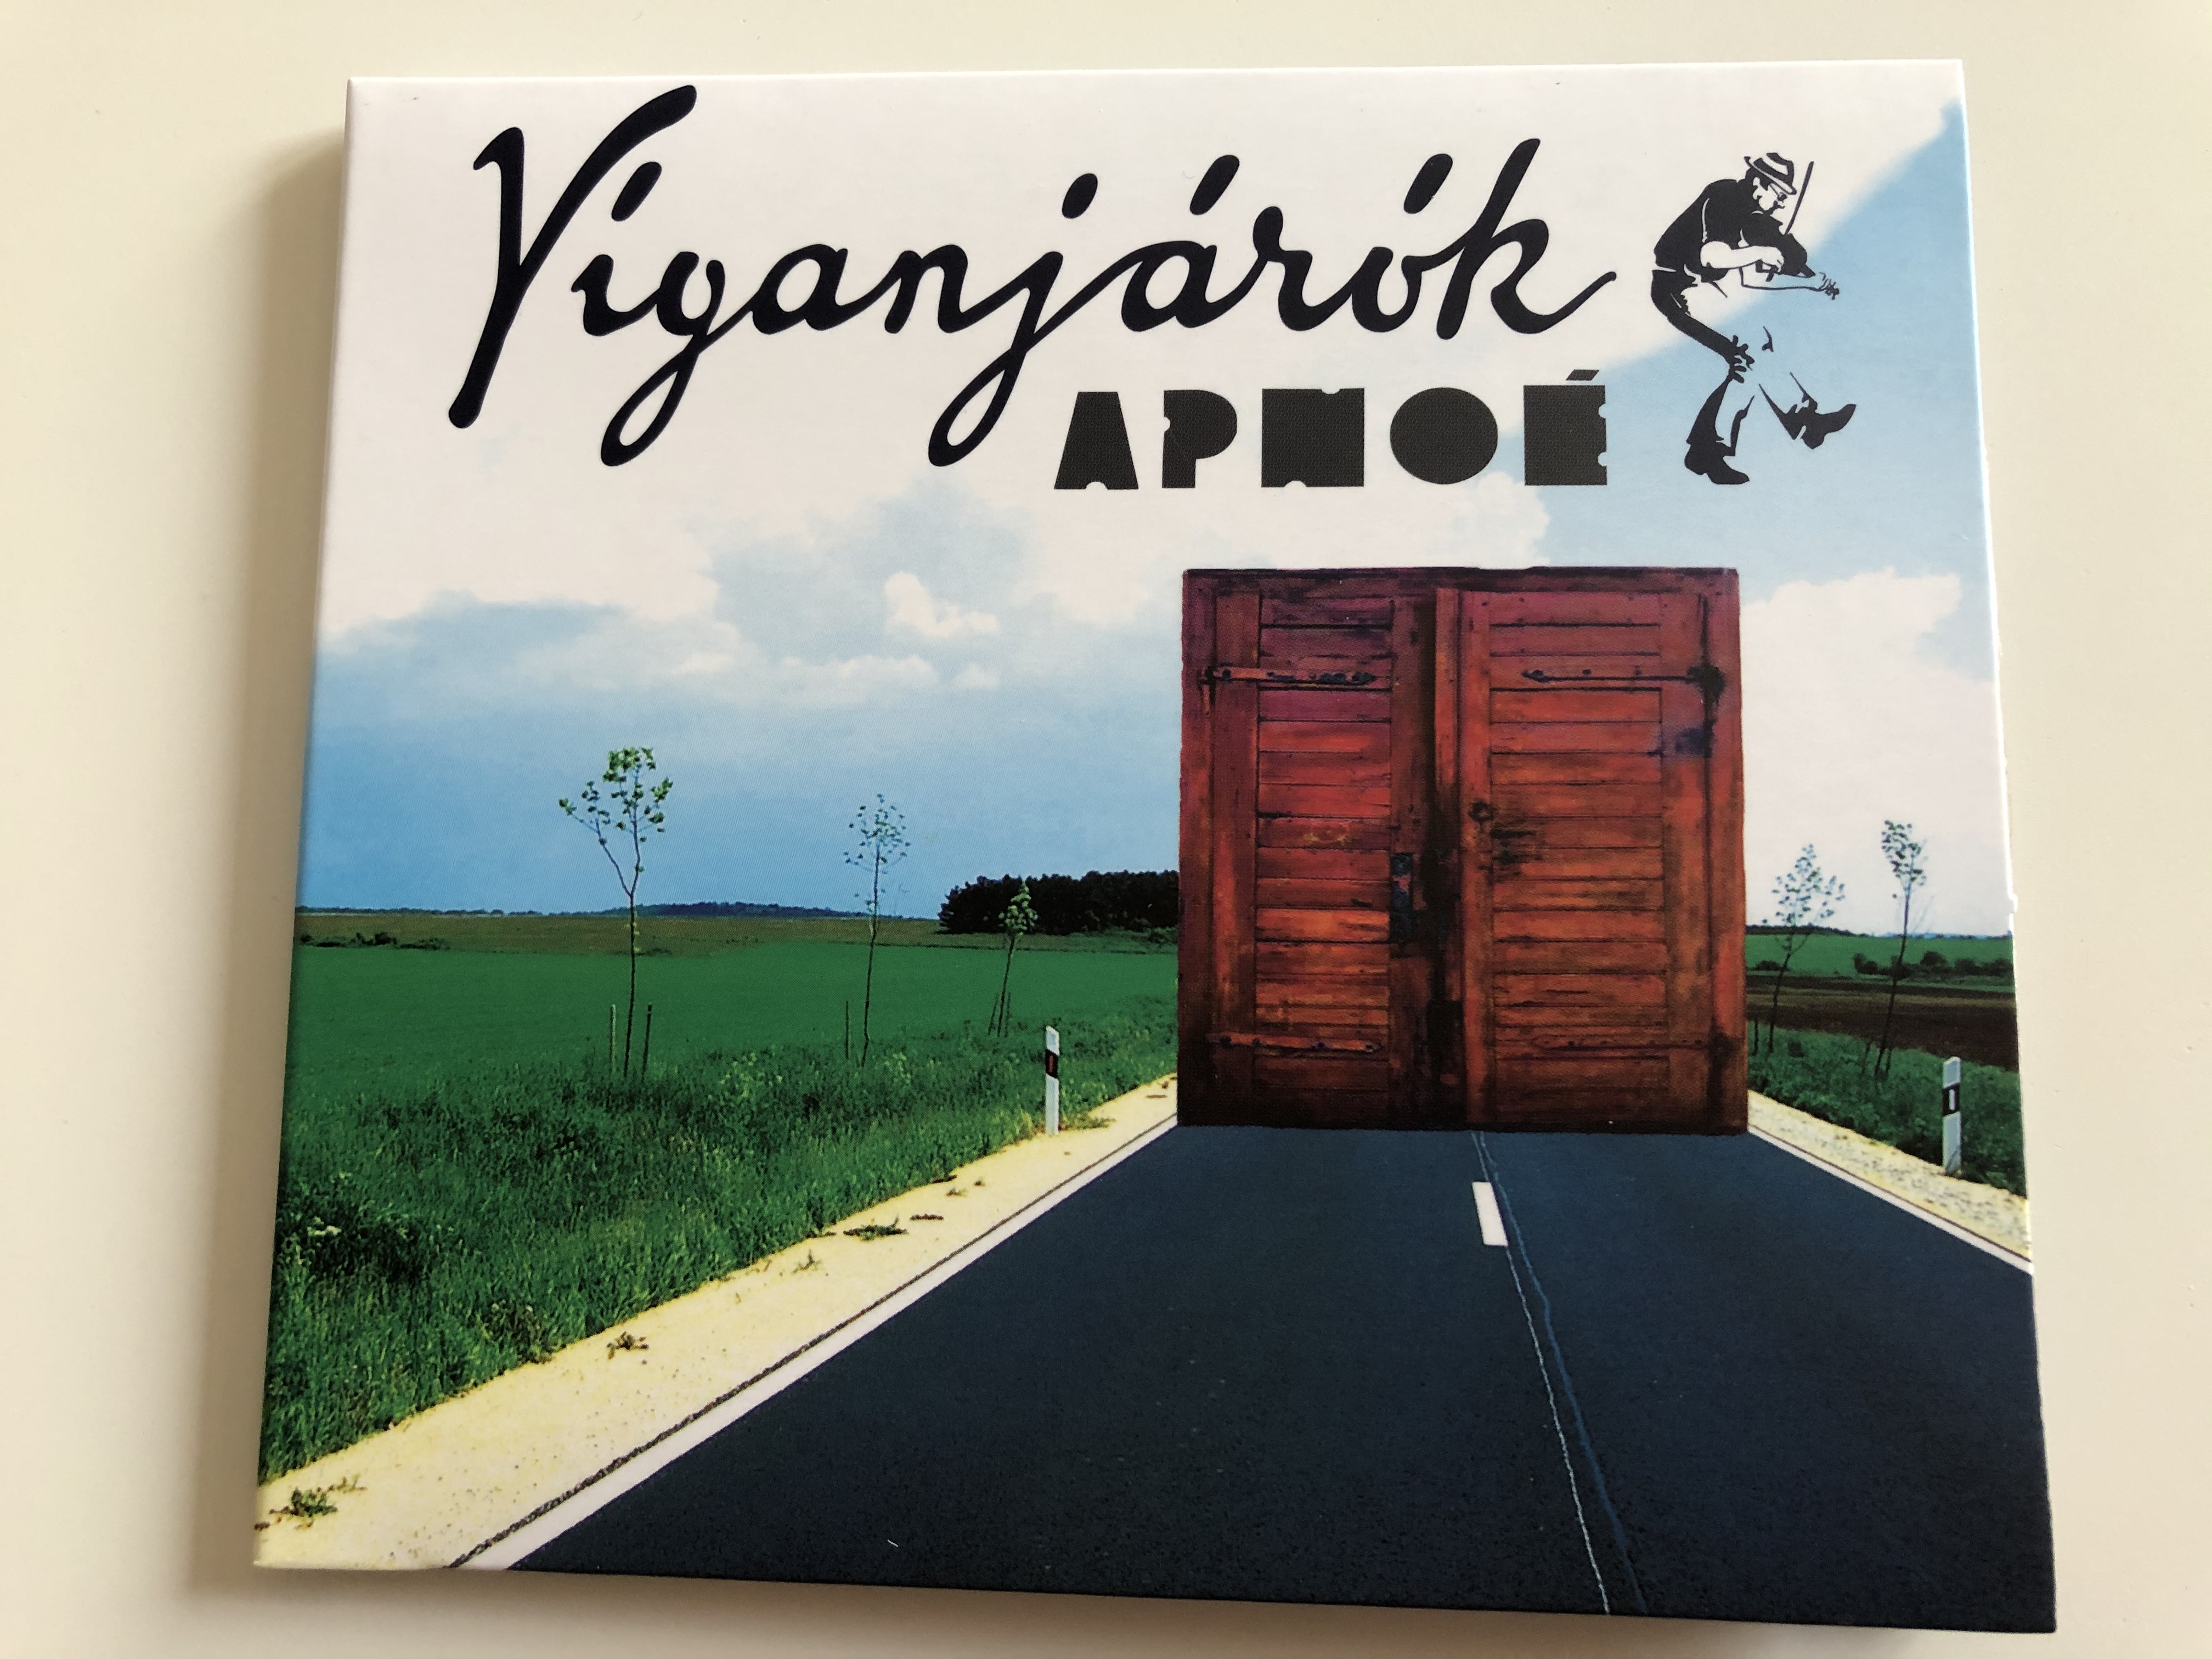 apnoe-viganjarok-gryllus-audio-cd-2014-gcd-138-1-.jpg